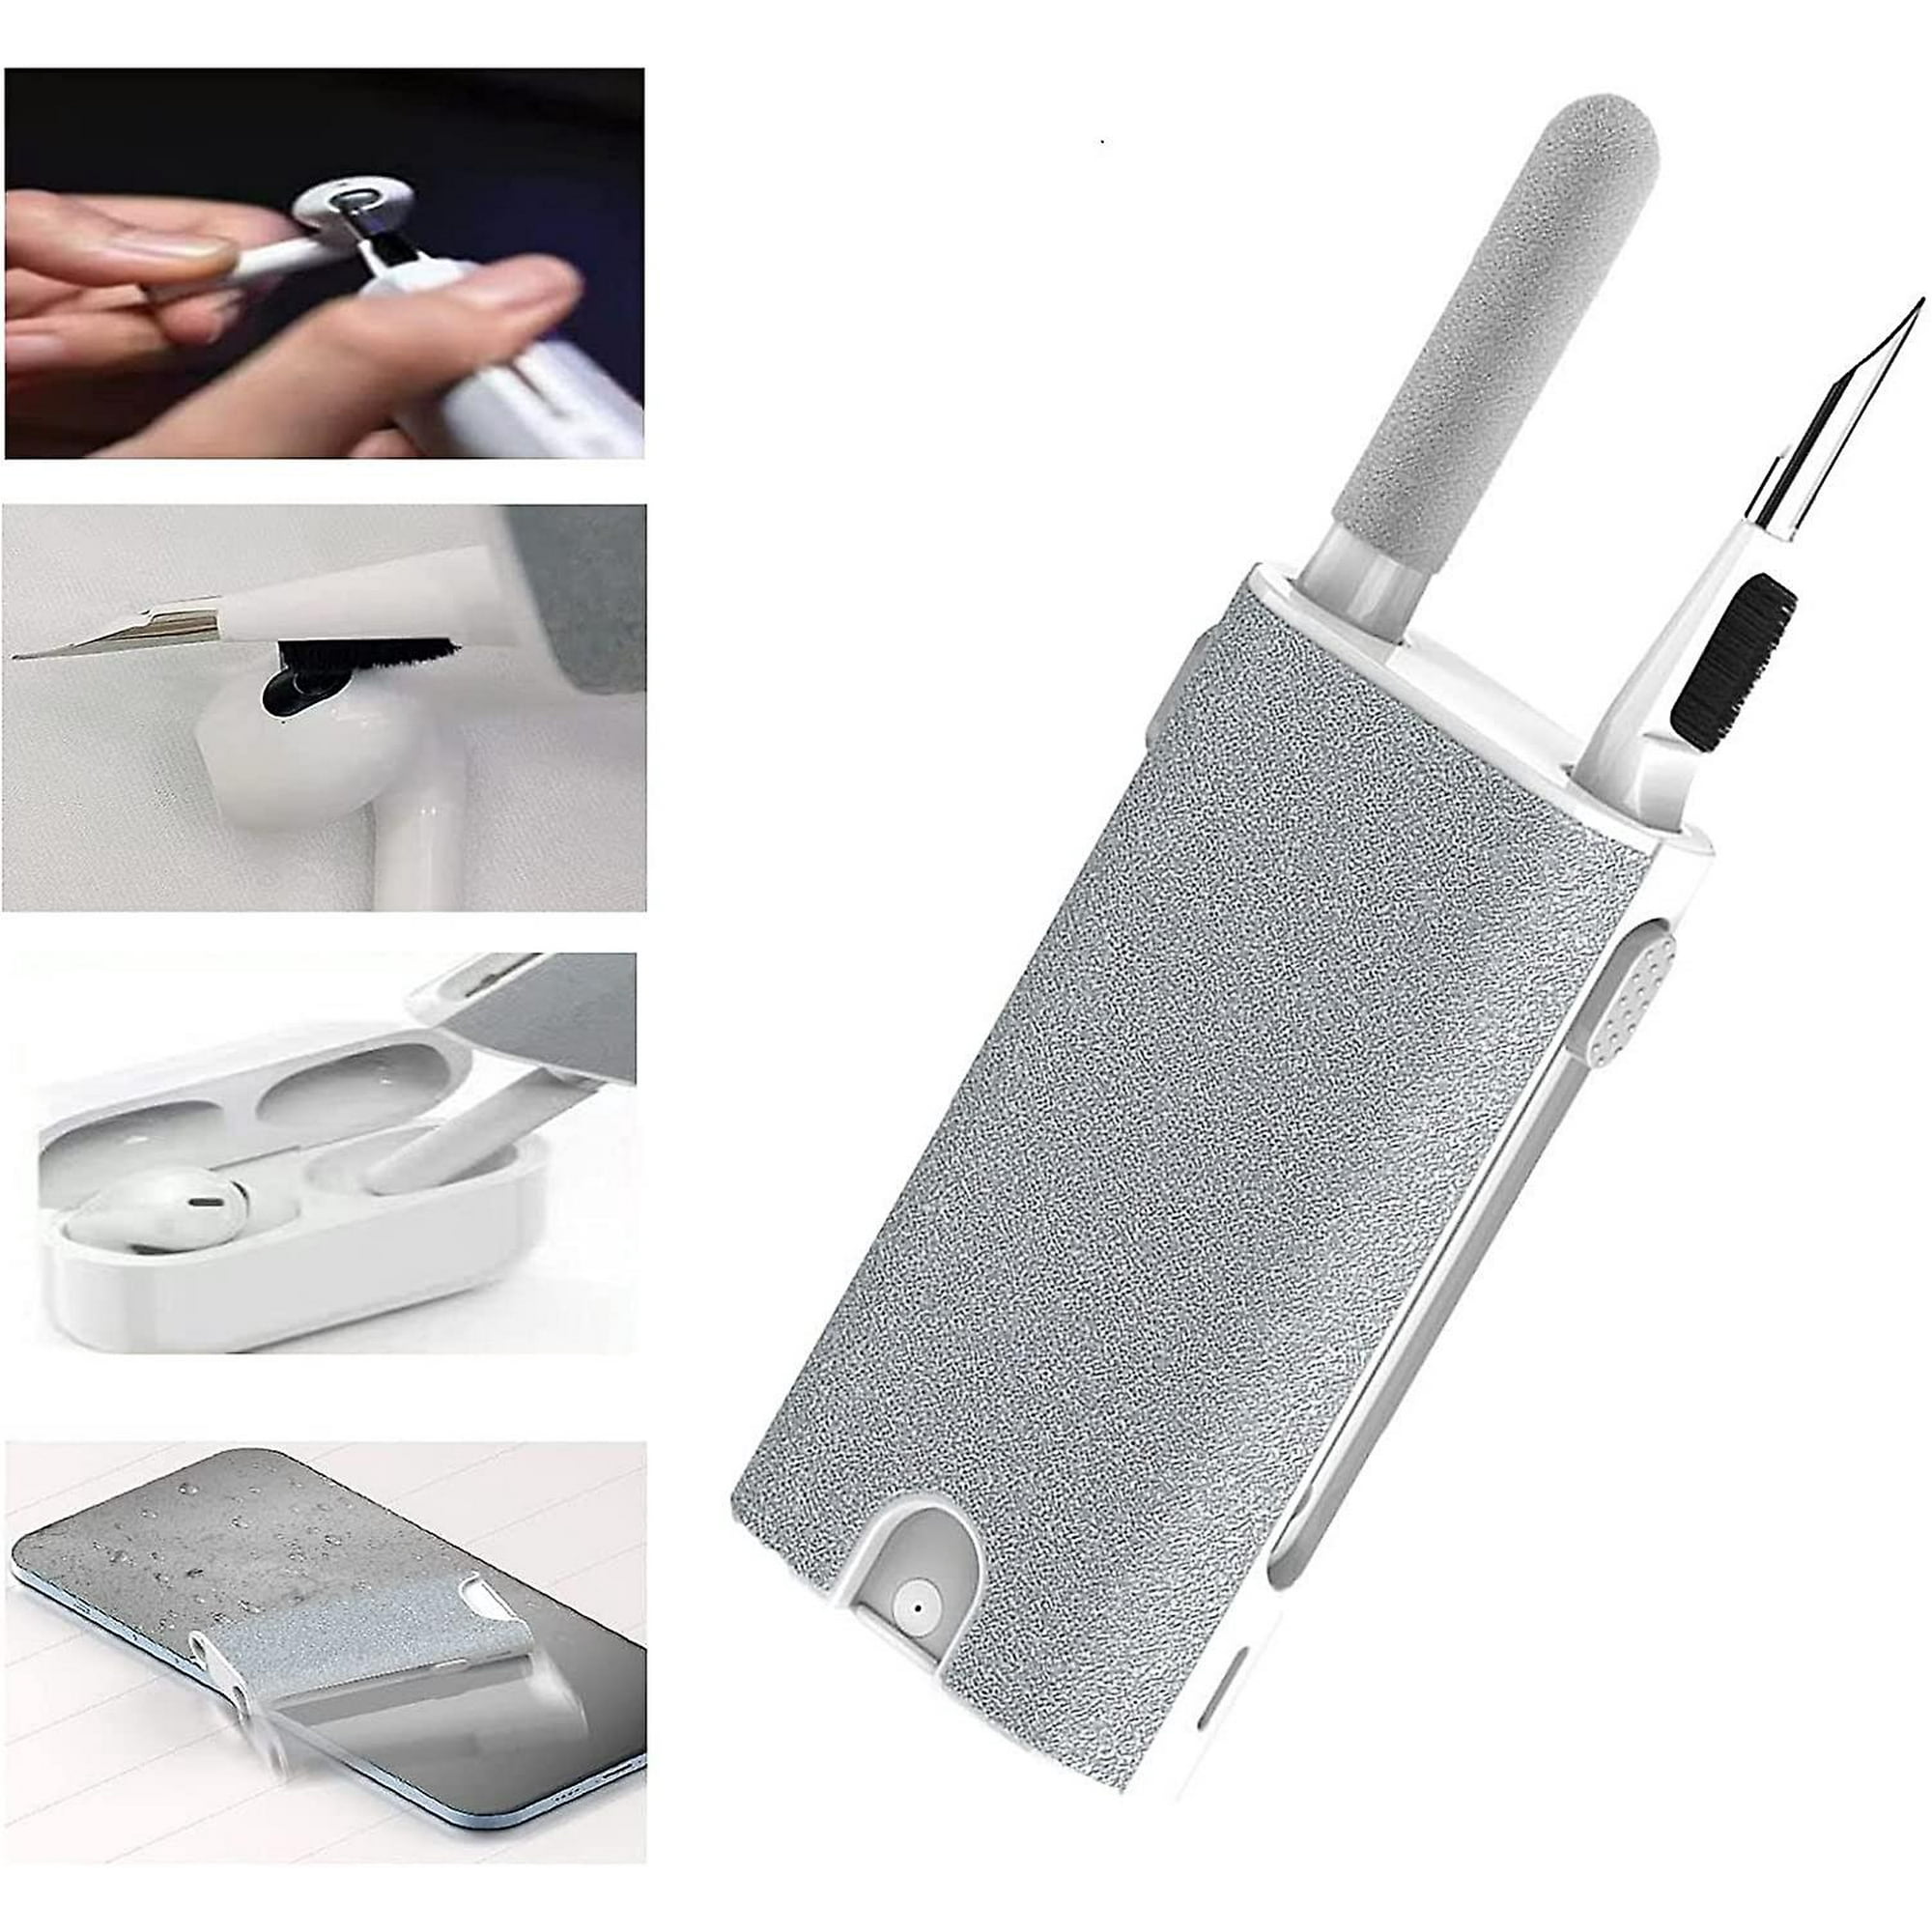  Kit de limpieza para Airpods, kit de limpieza de auriculares  para Airpods Pro 1 2 3, kit de limpieza de teléfono con cepillo para  auriculares Bluetooth, auriculares inalámbricos, iPhone, portátil, :  Electrónica